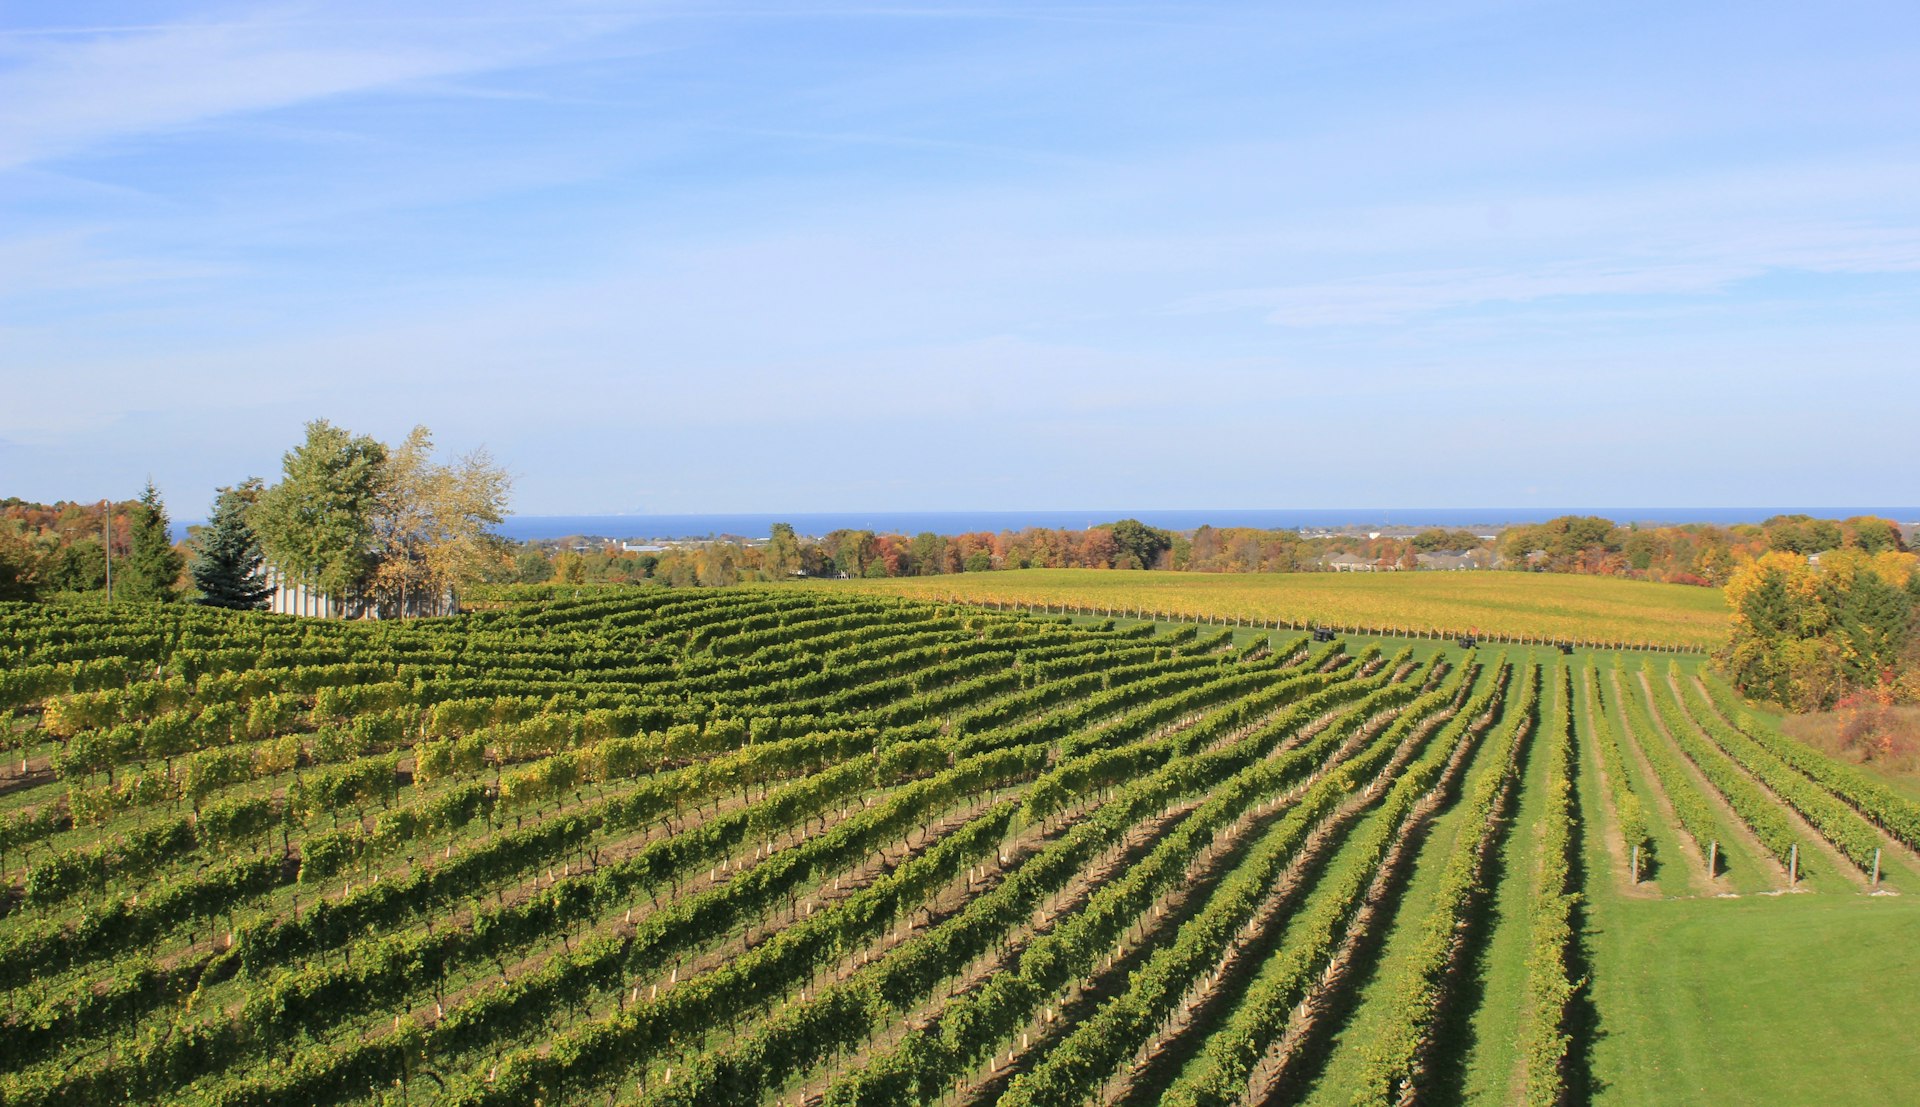 Grape fields at a winery in Jordan, Niagara Peninsula, Ontario, Canada